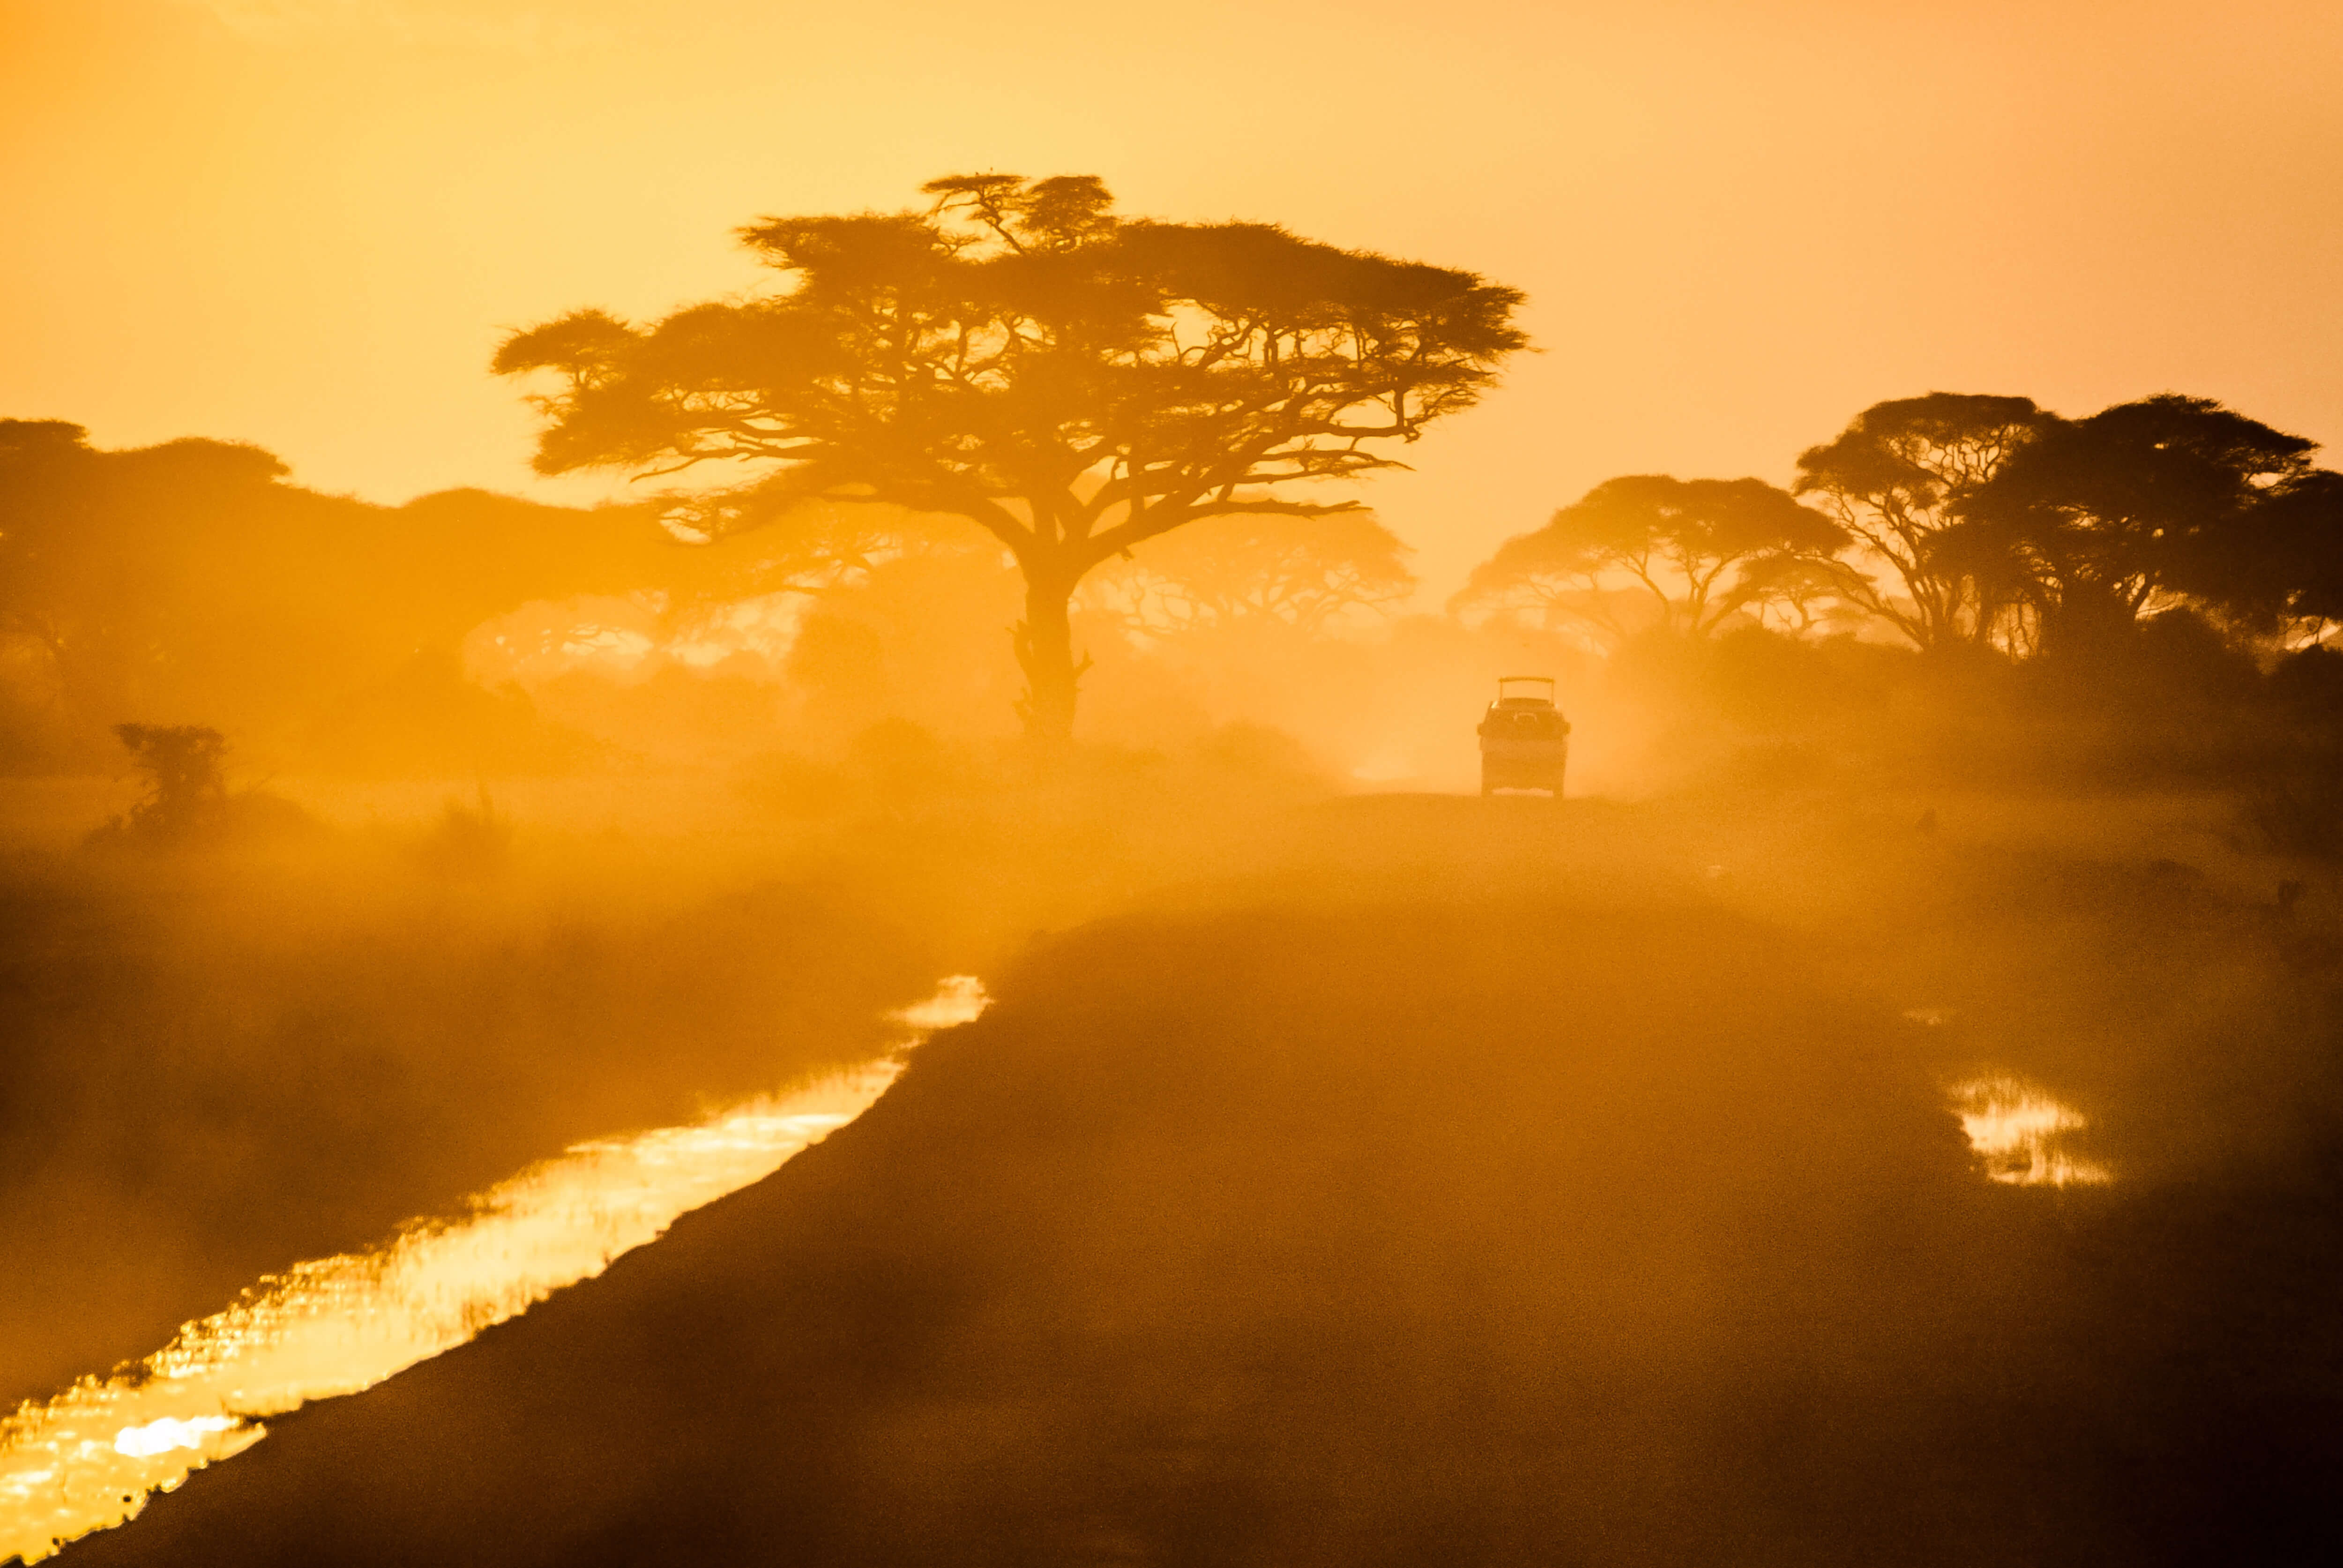 African safari in the golden light of dusk